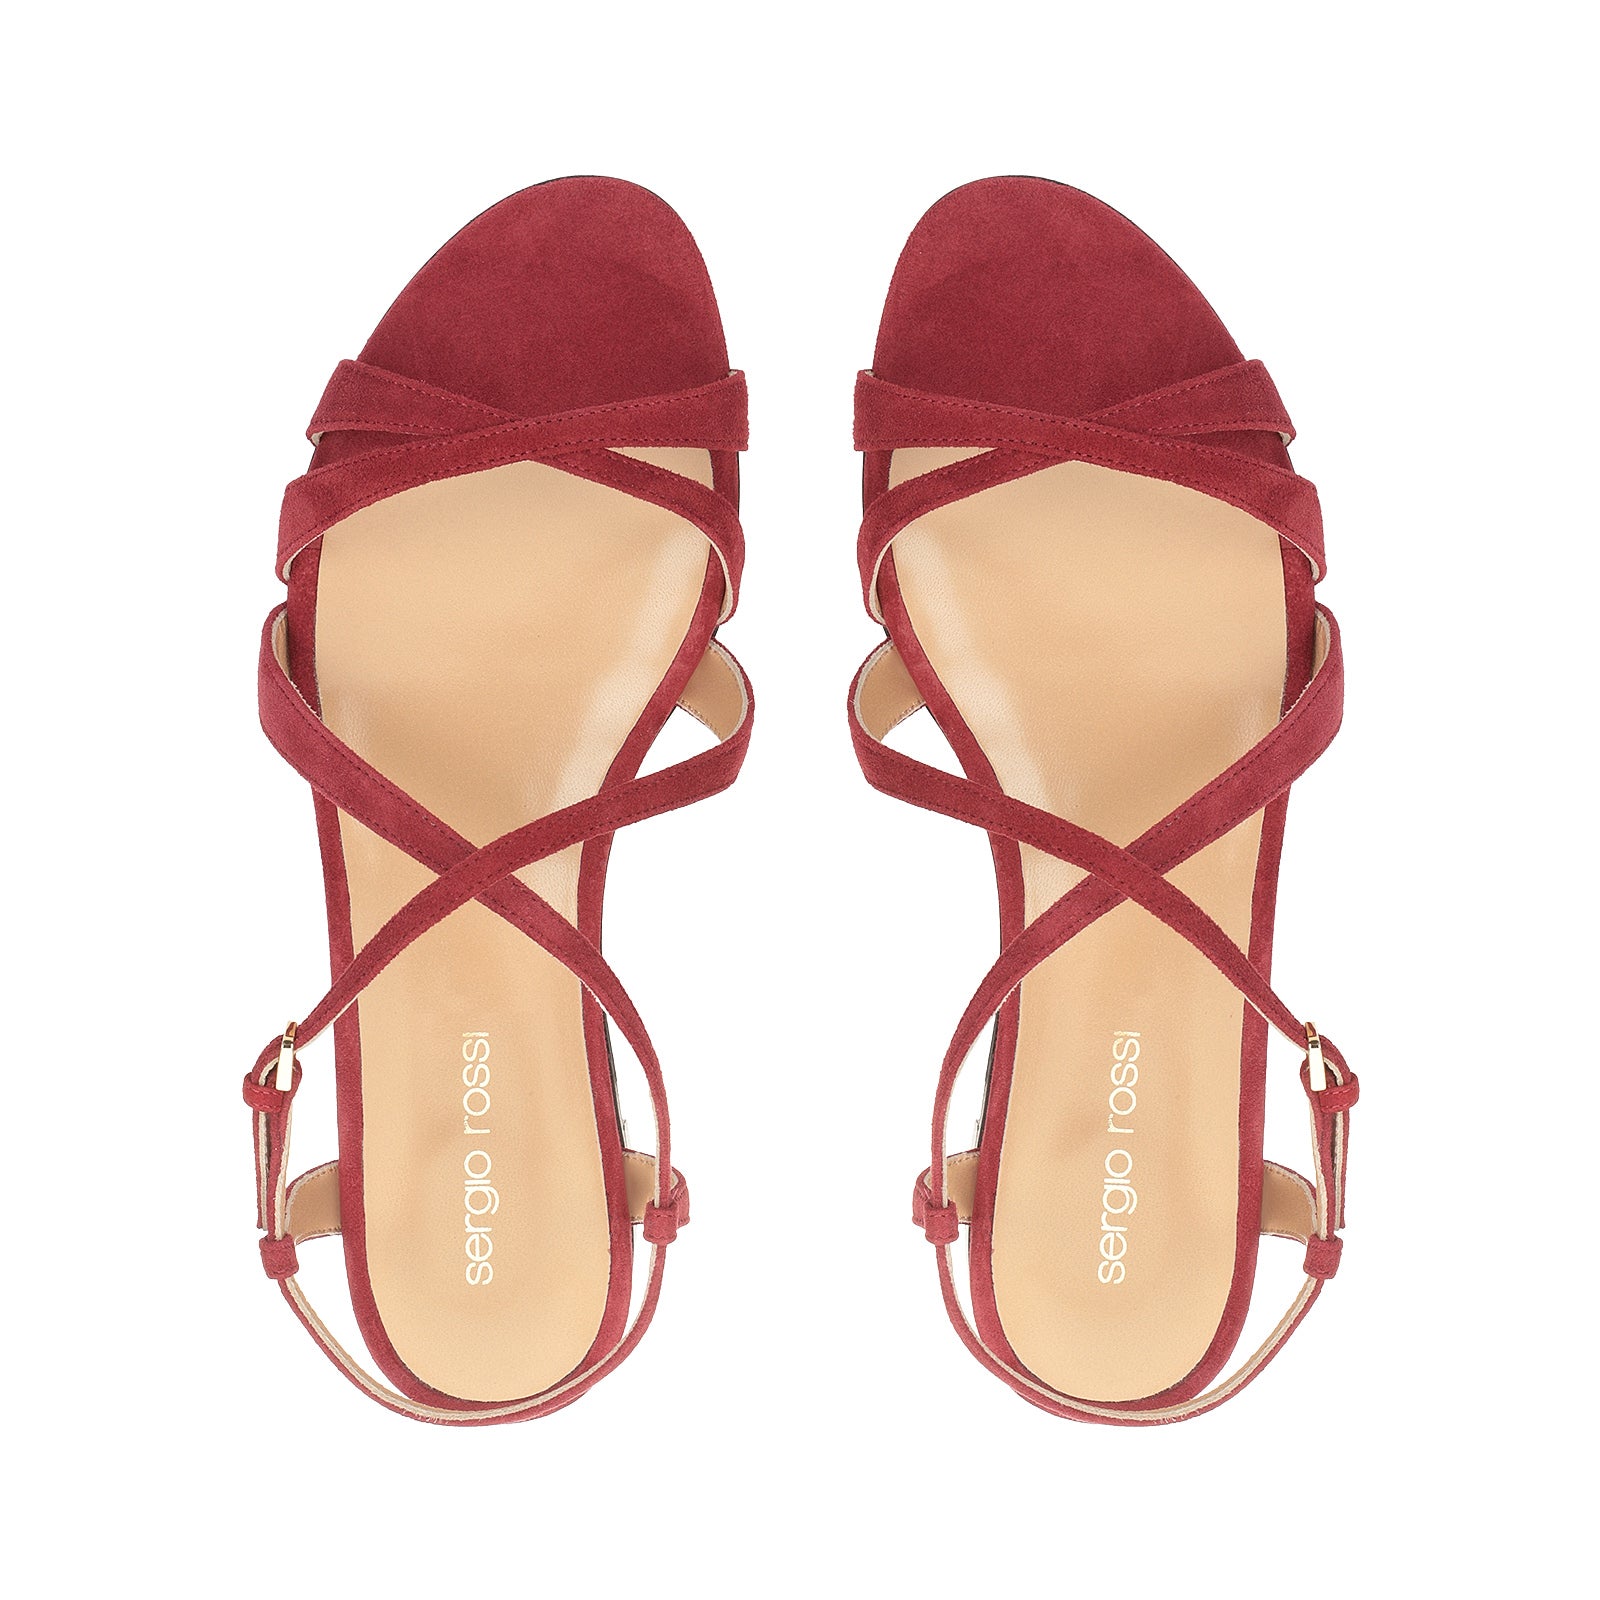 Gruppo A flat sandals - Deep Red